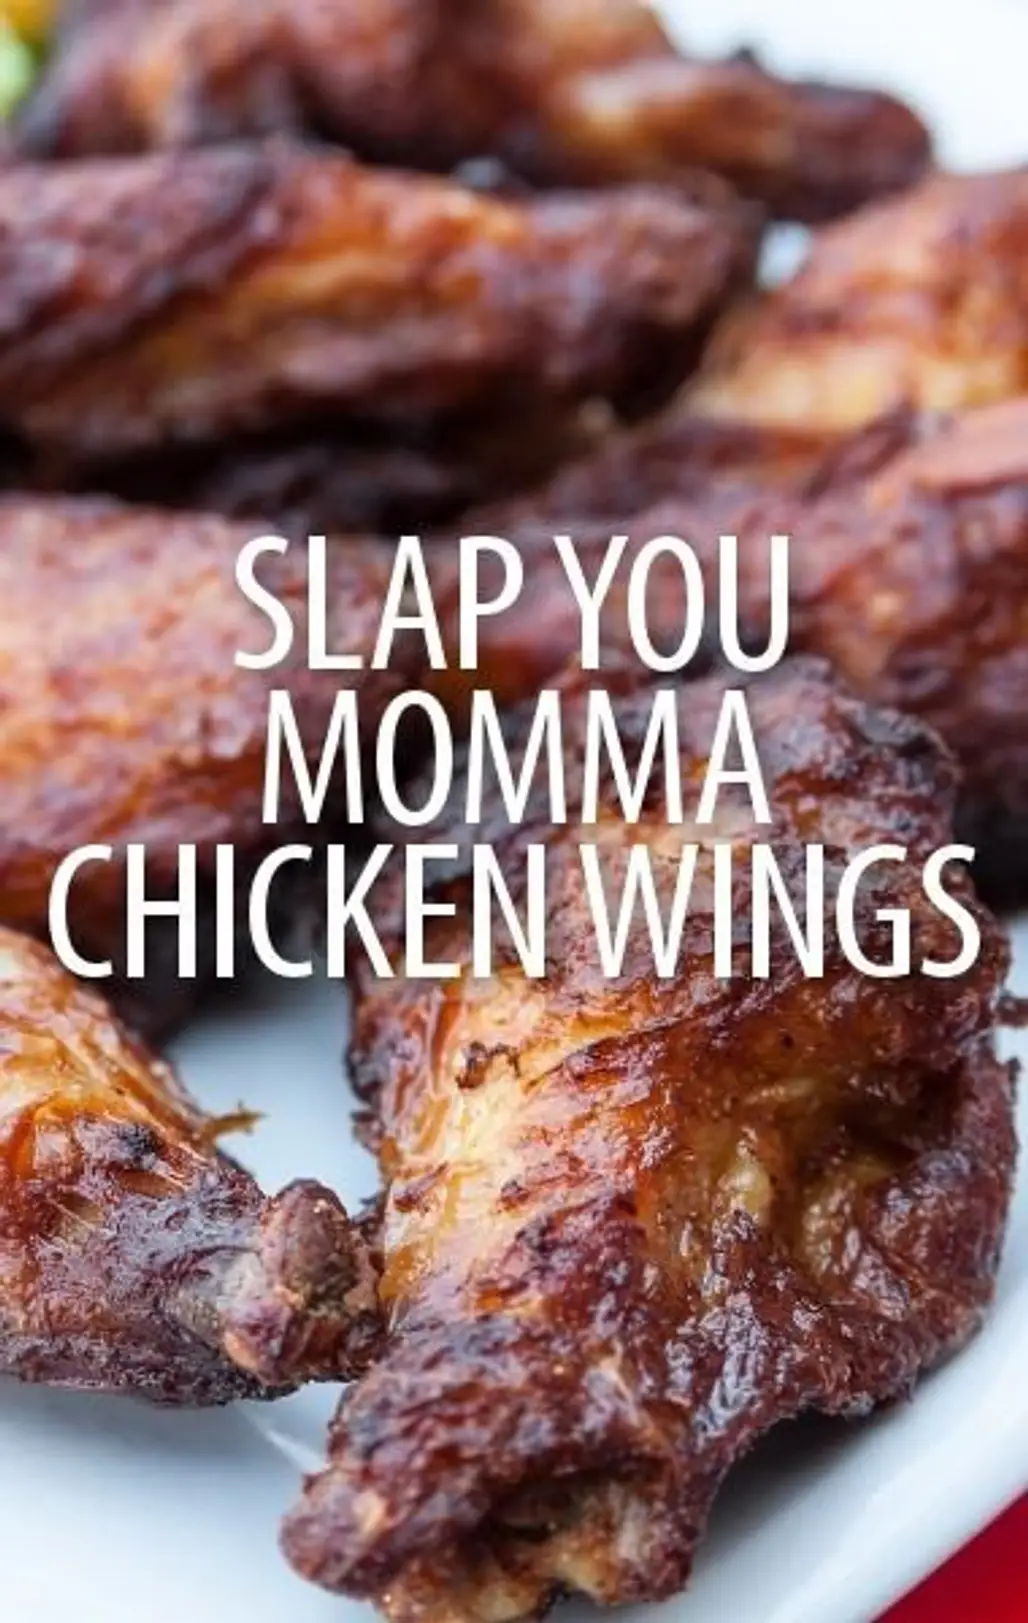 Adam Richman's Slap Yo Momma Chicken Wings